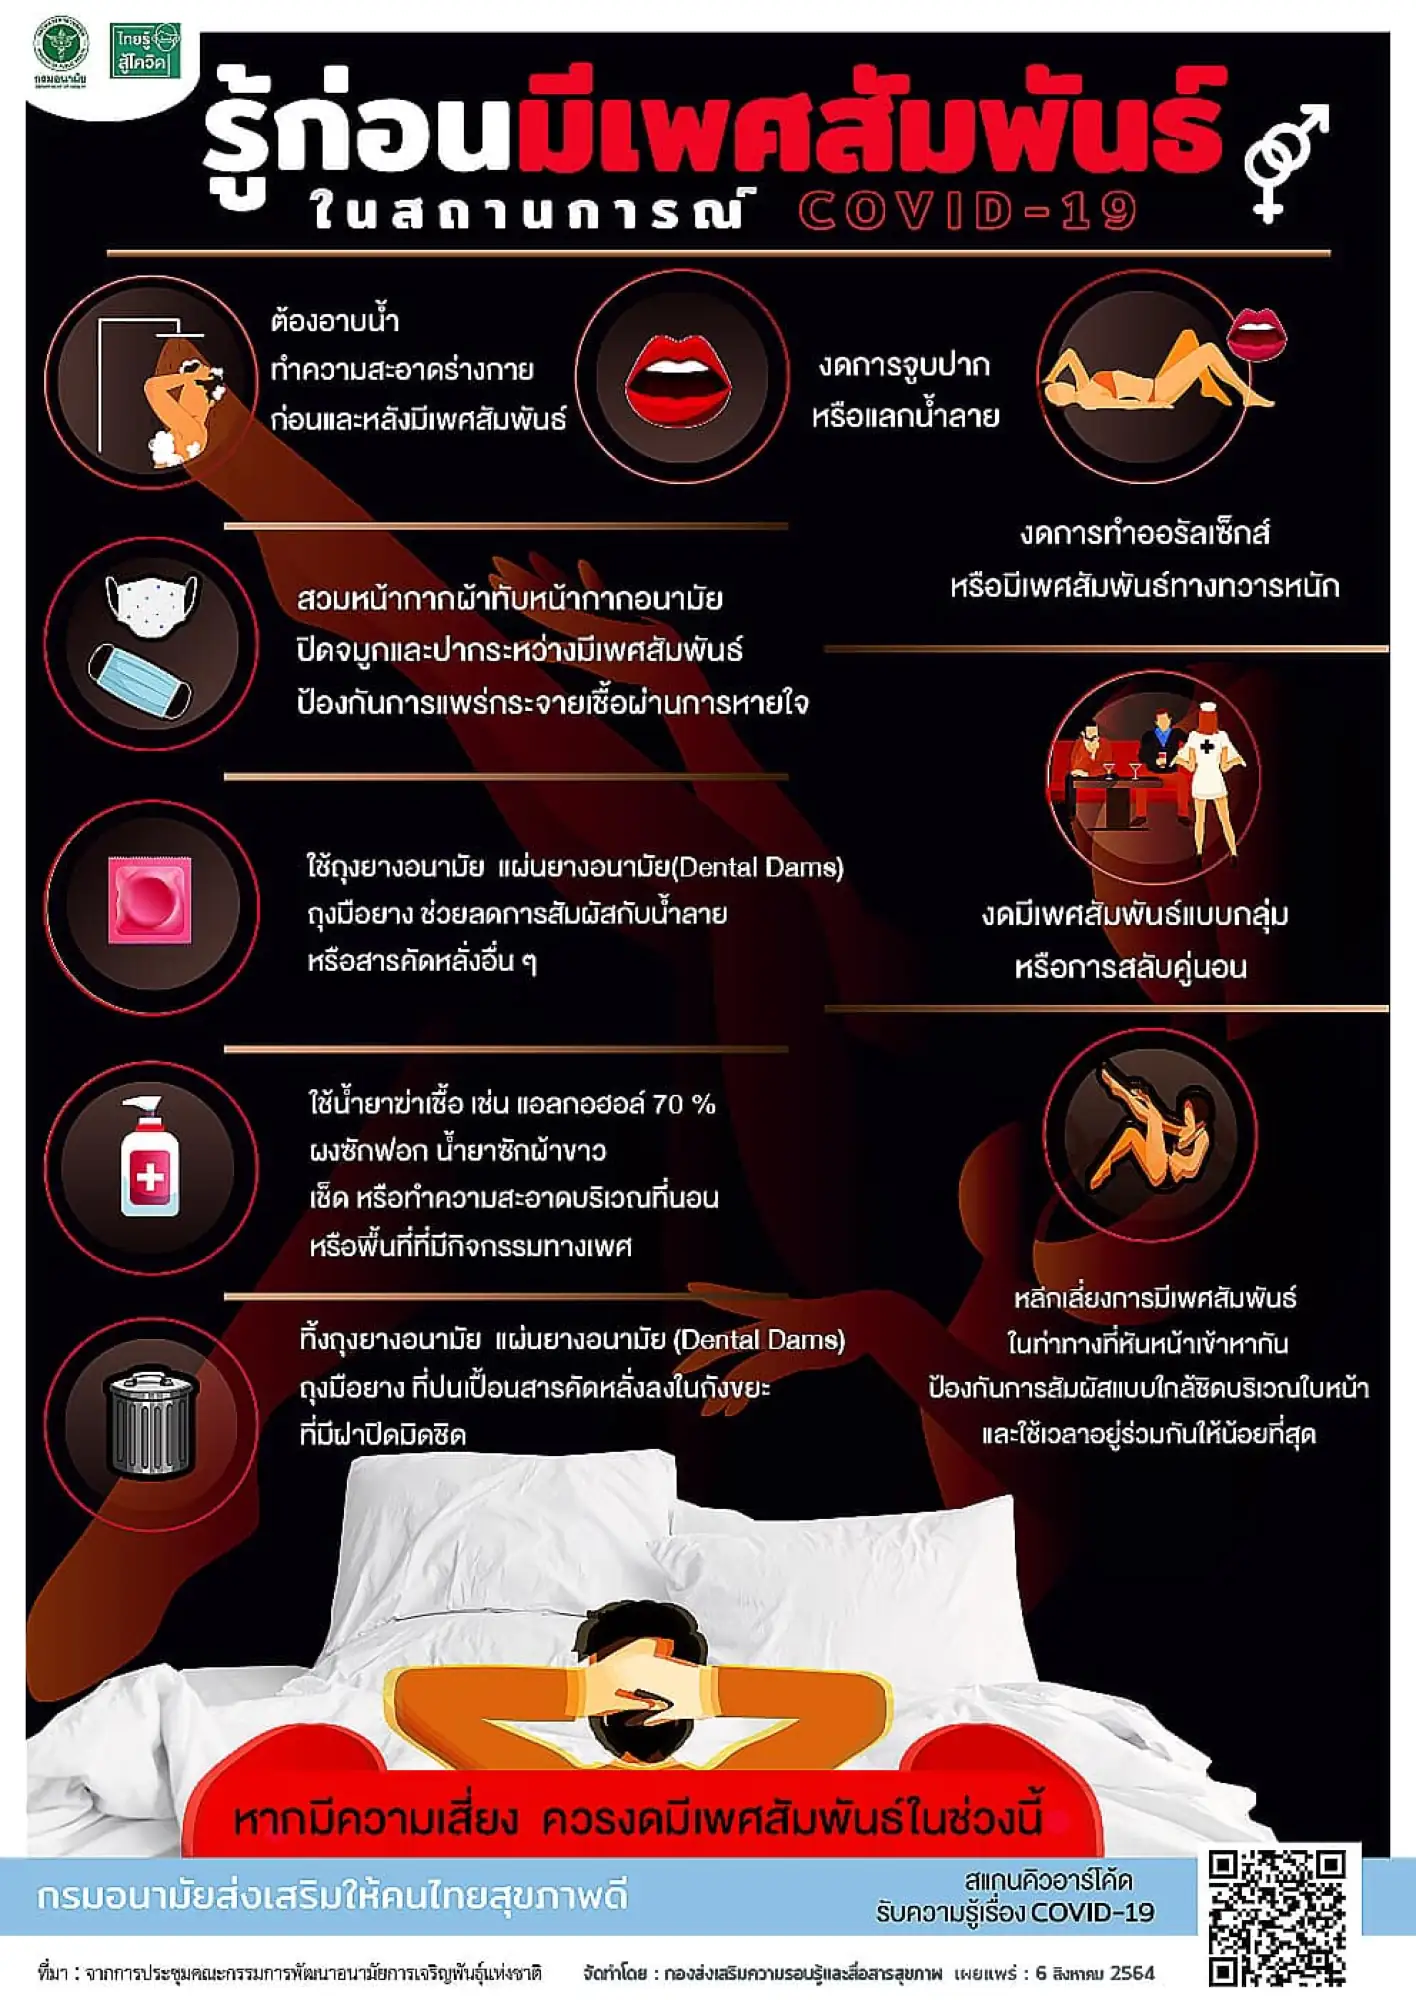 為防止泰國新冠肺炎(COVID-19)疫情繼續惡化，泰國衛生部公佈「疫情期間性行為9大注意事項」提醒（圖片來源：臉書@กรมอนามัย）